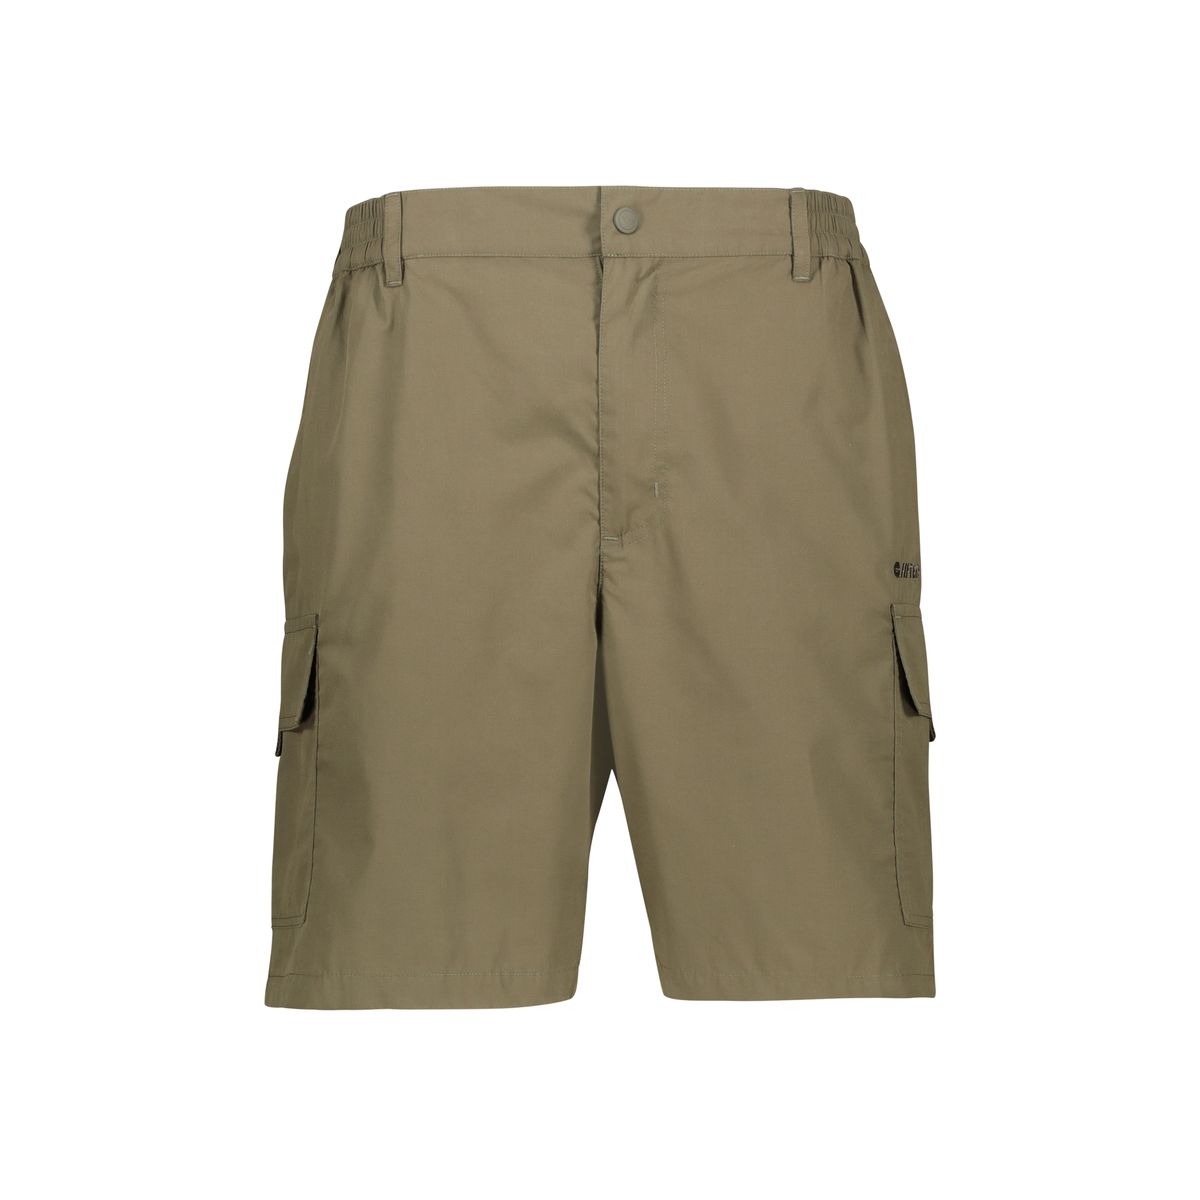 HI-TEC - Men's Utility Cargo Shorts - Black/Olive | Shop Today. Get it ...